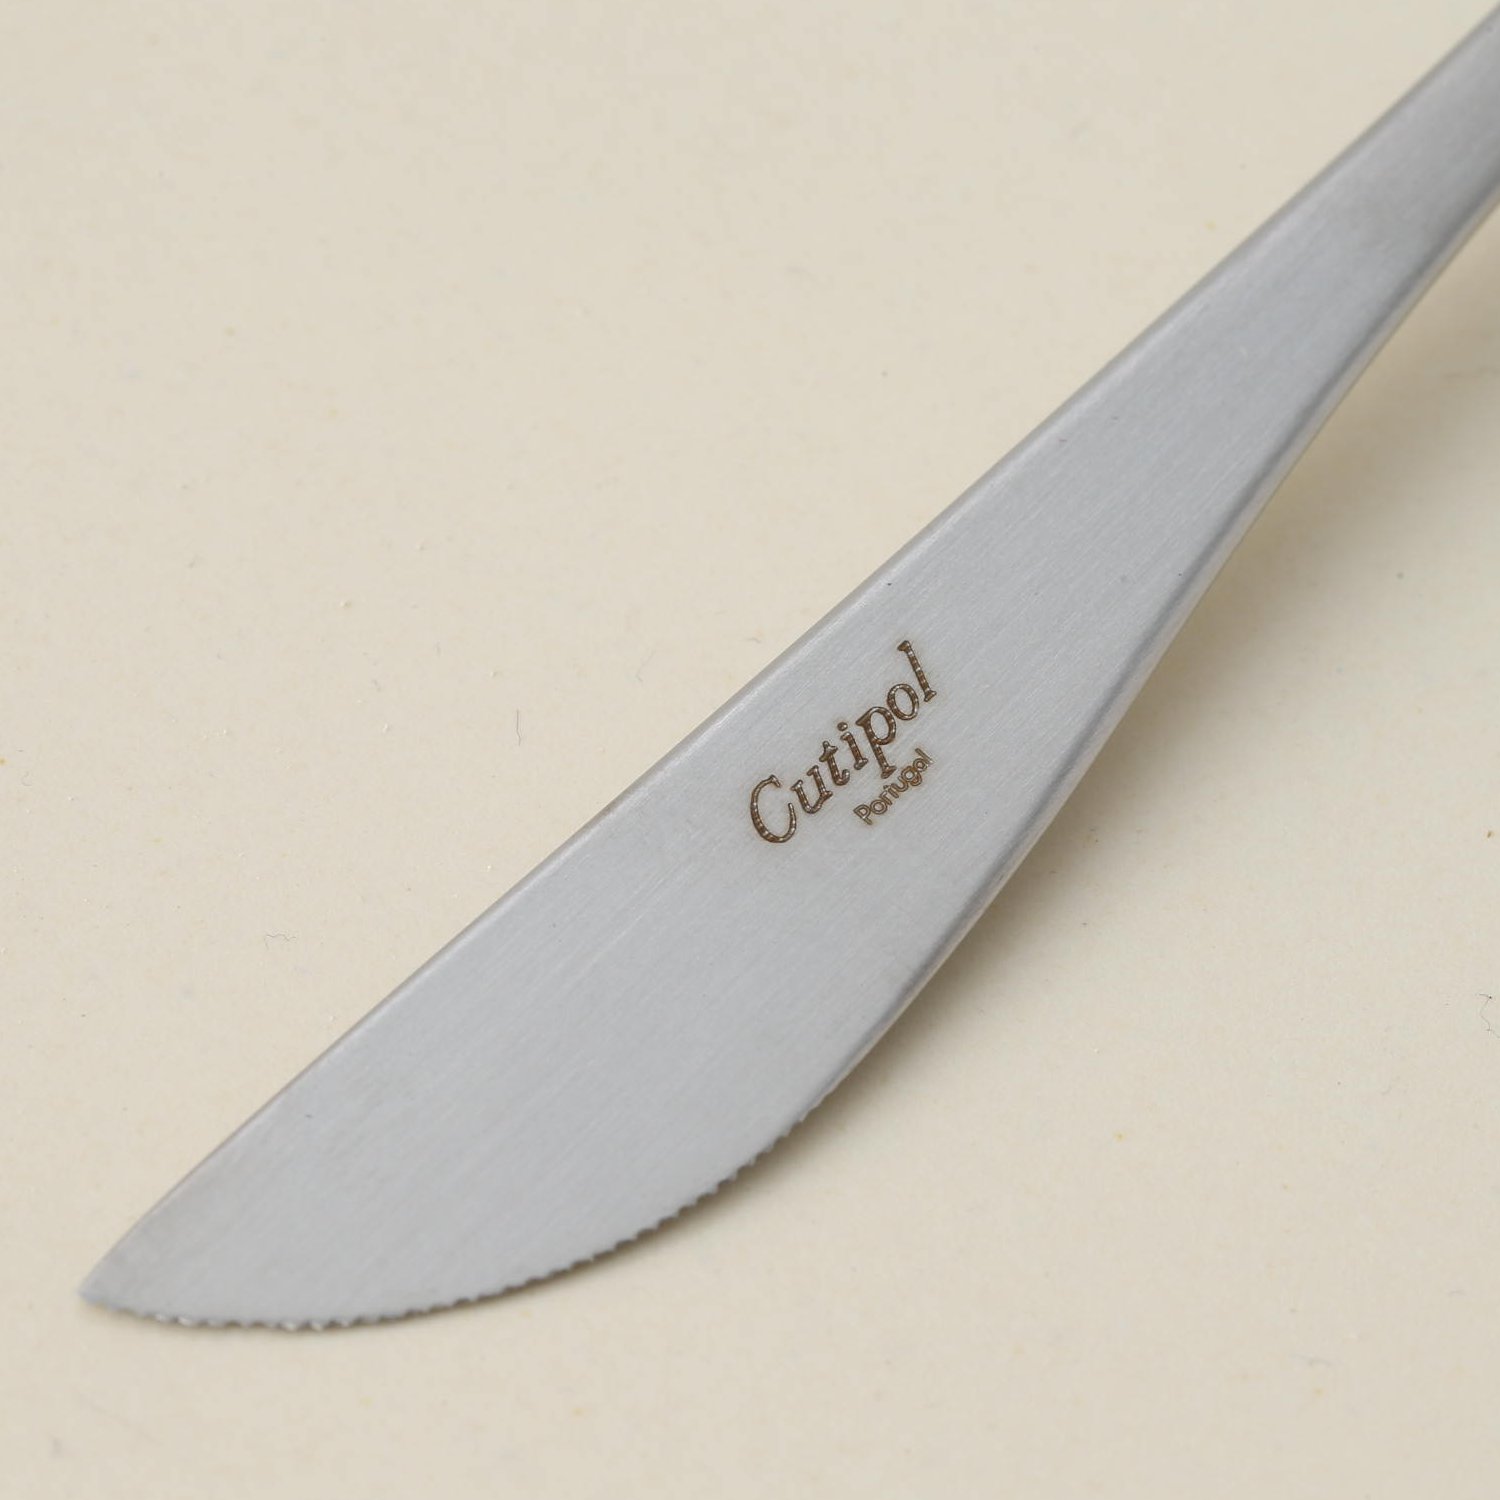 Cutipol/GOA ディナーナイフ ブラック